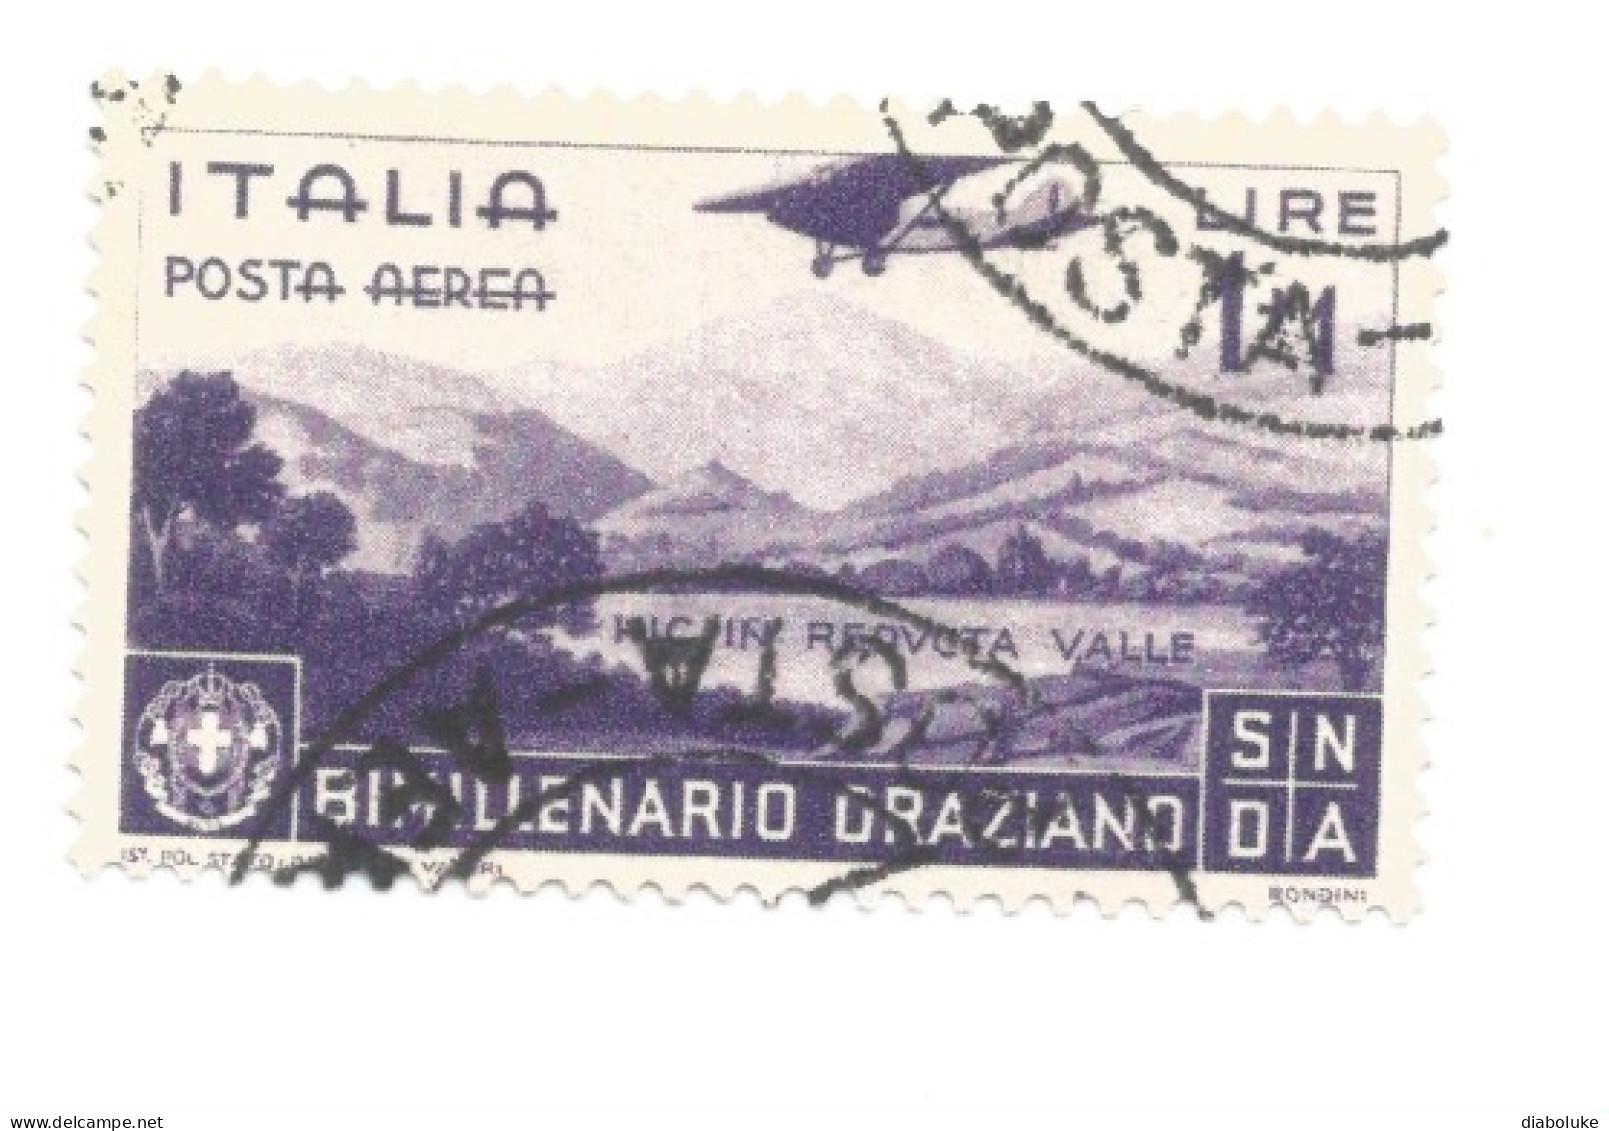 (REGNO D'ITALIA) 1936, BIMILLENARIO ORAZIANO CON POSTA AEREA - Serie di 13 francobolli usati, annulli da periziare